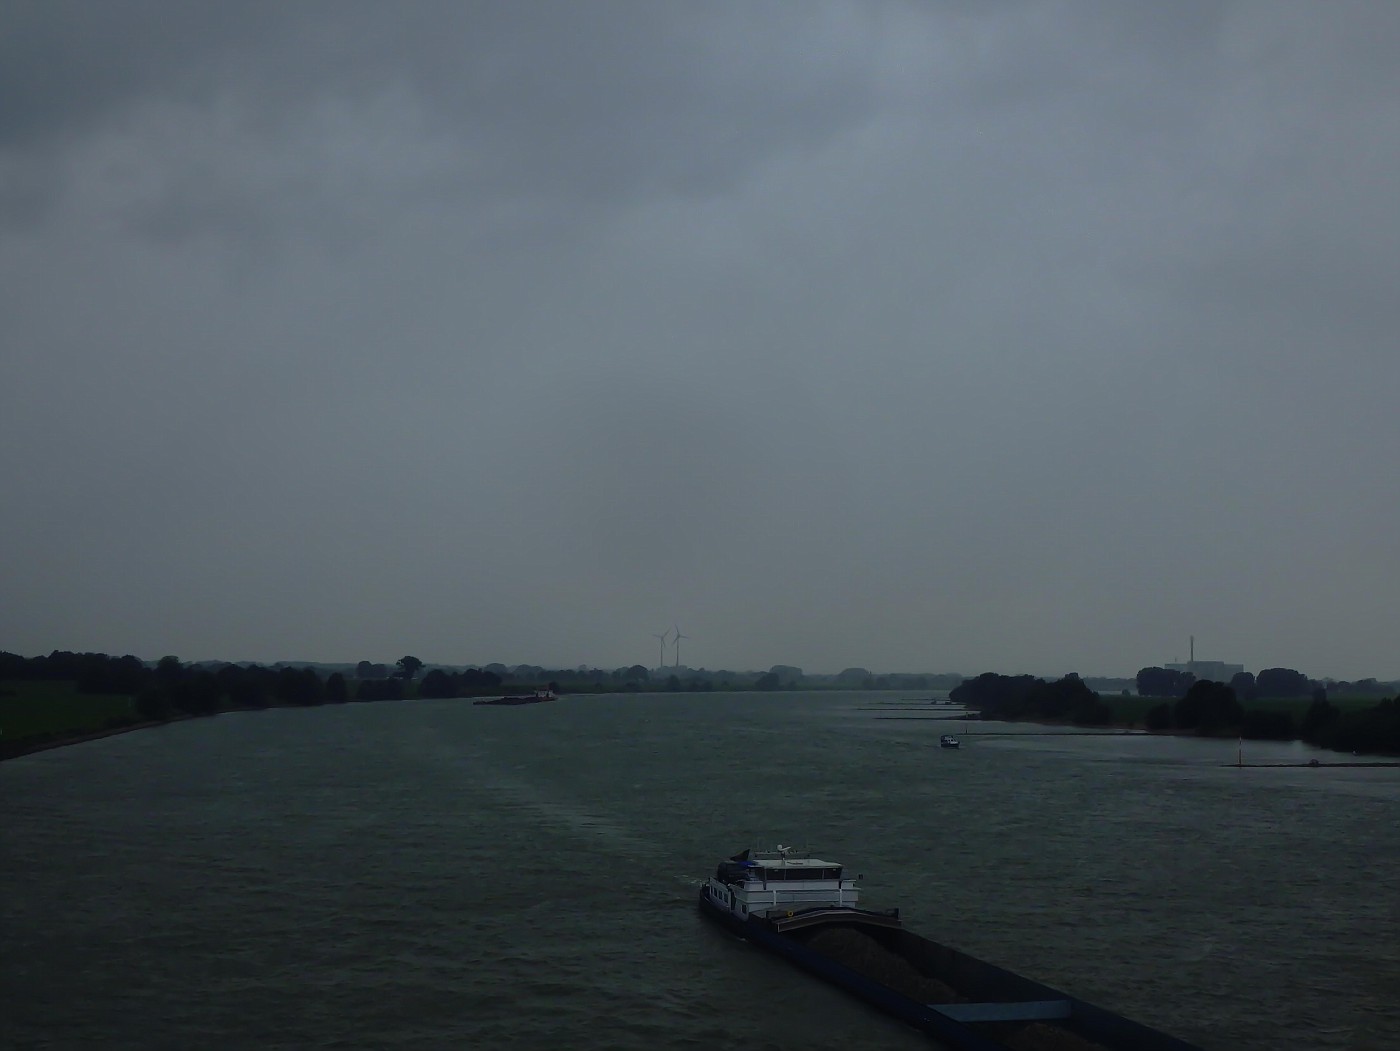 Der Rhein in grau